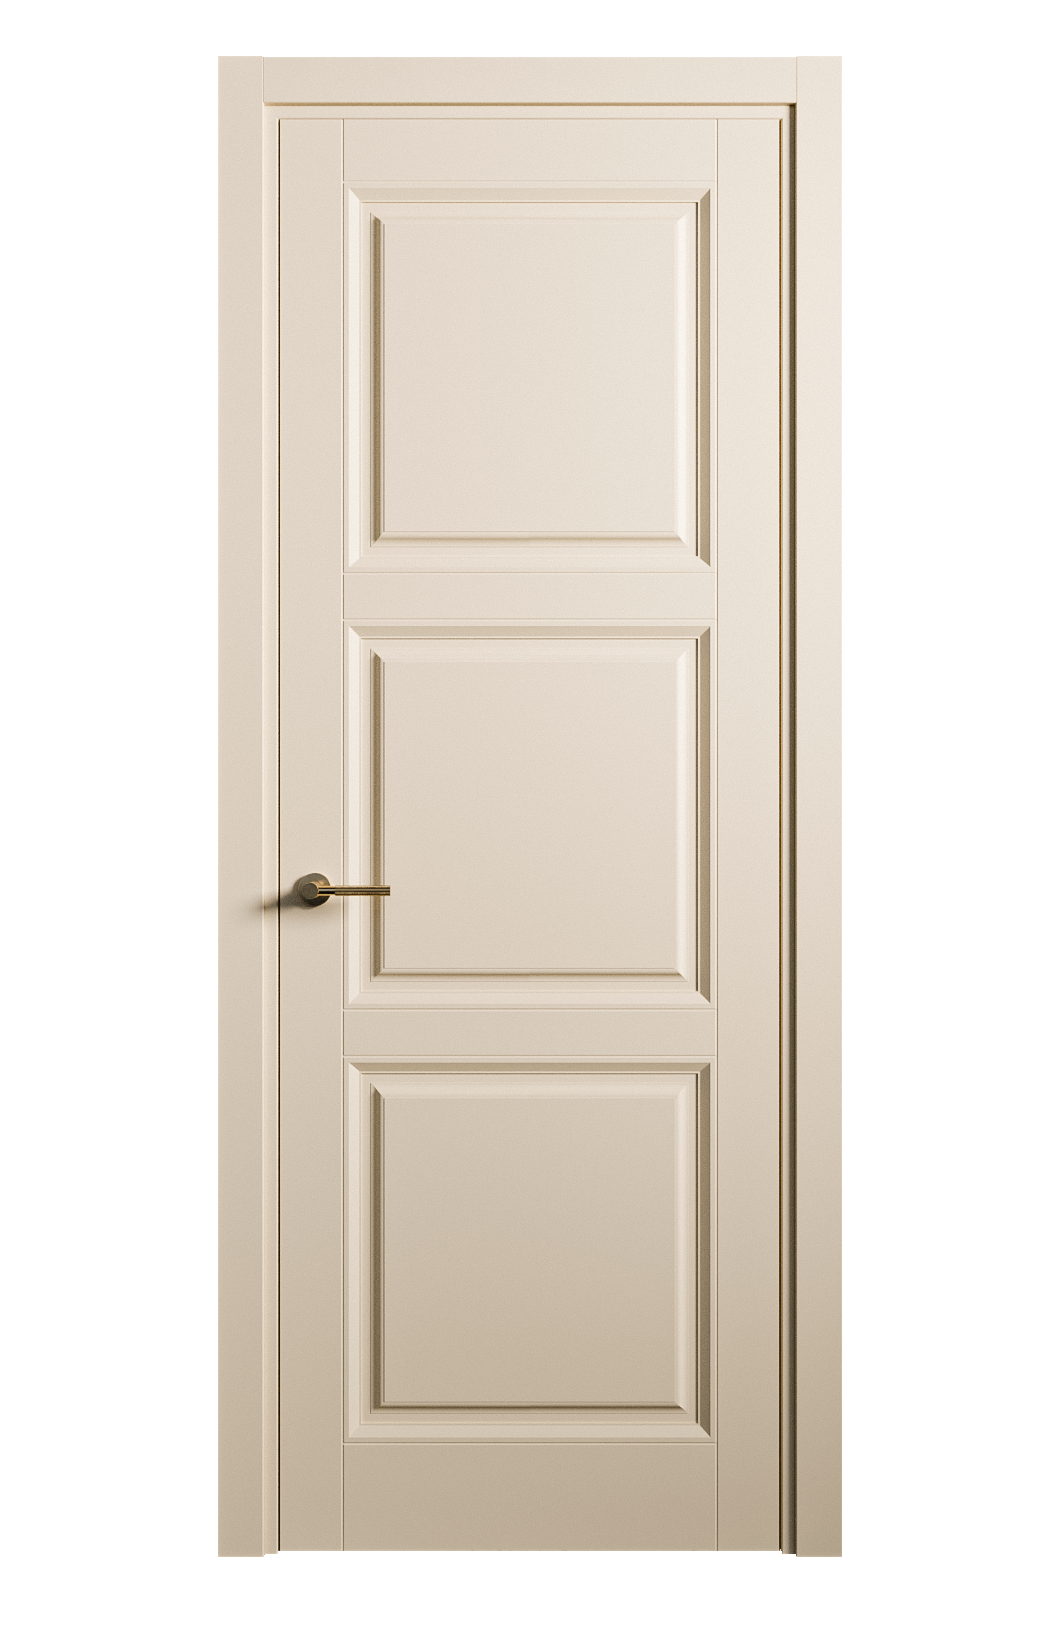 Межкомнатная дверь Venezia-3 глухая эмаль ral 1015 25718